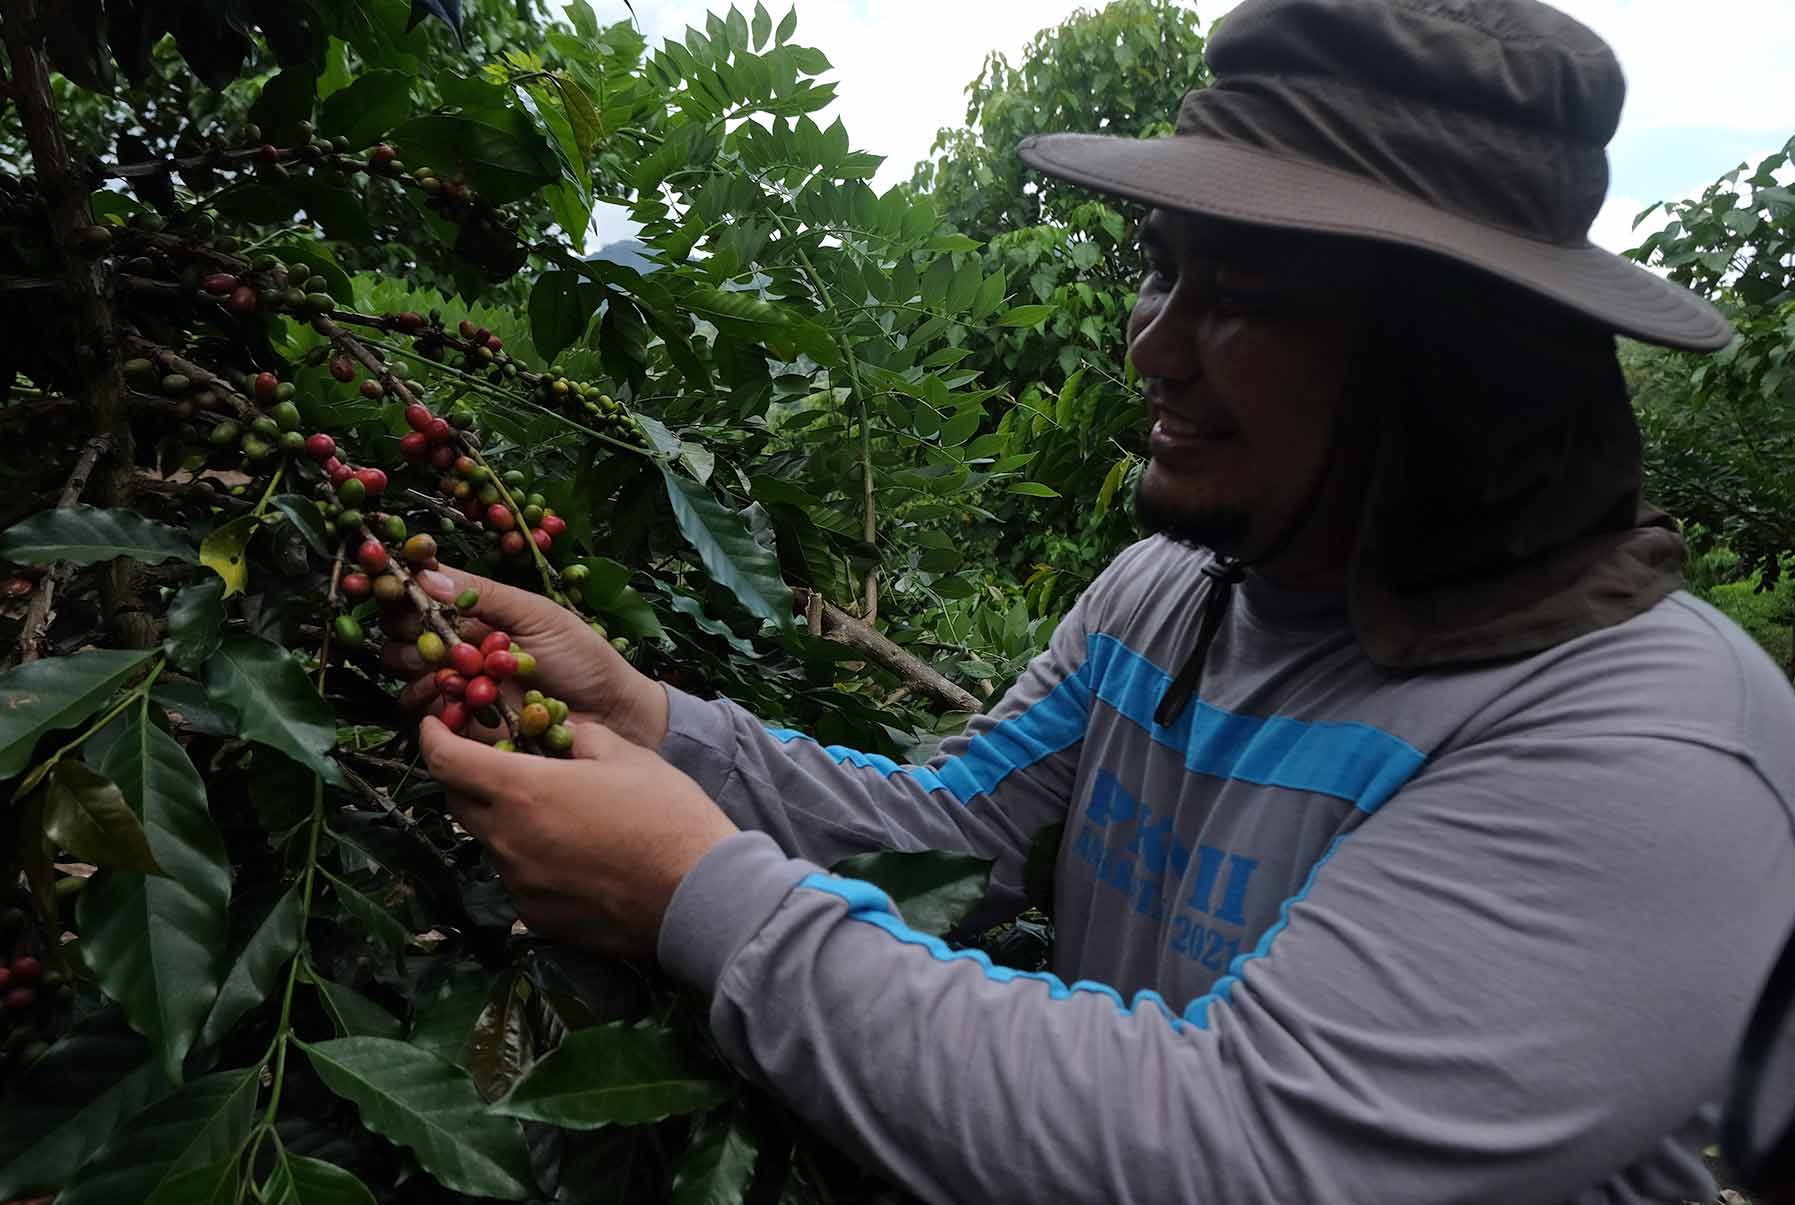 Rio Lombone, salah satu petani kopi di Mobalang, Kota Kotamobagu sedang menunjukkan buah kopi di perkebunan yang diolahnya. (Foto: Zonautara.com/Marshal Datundungon)